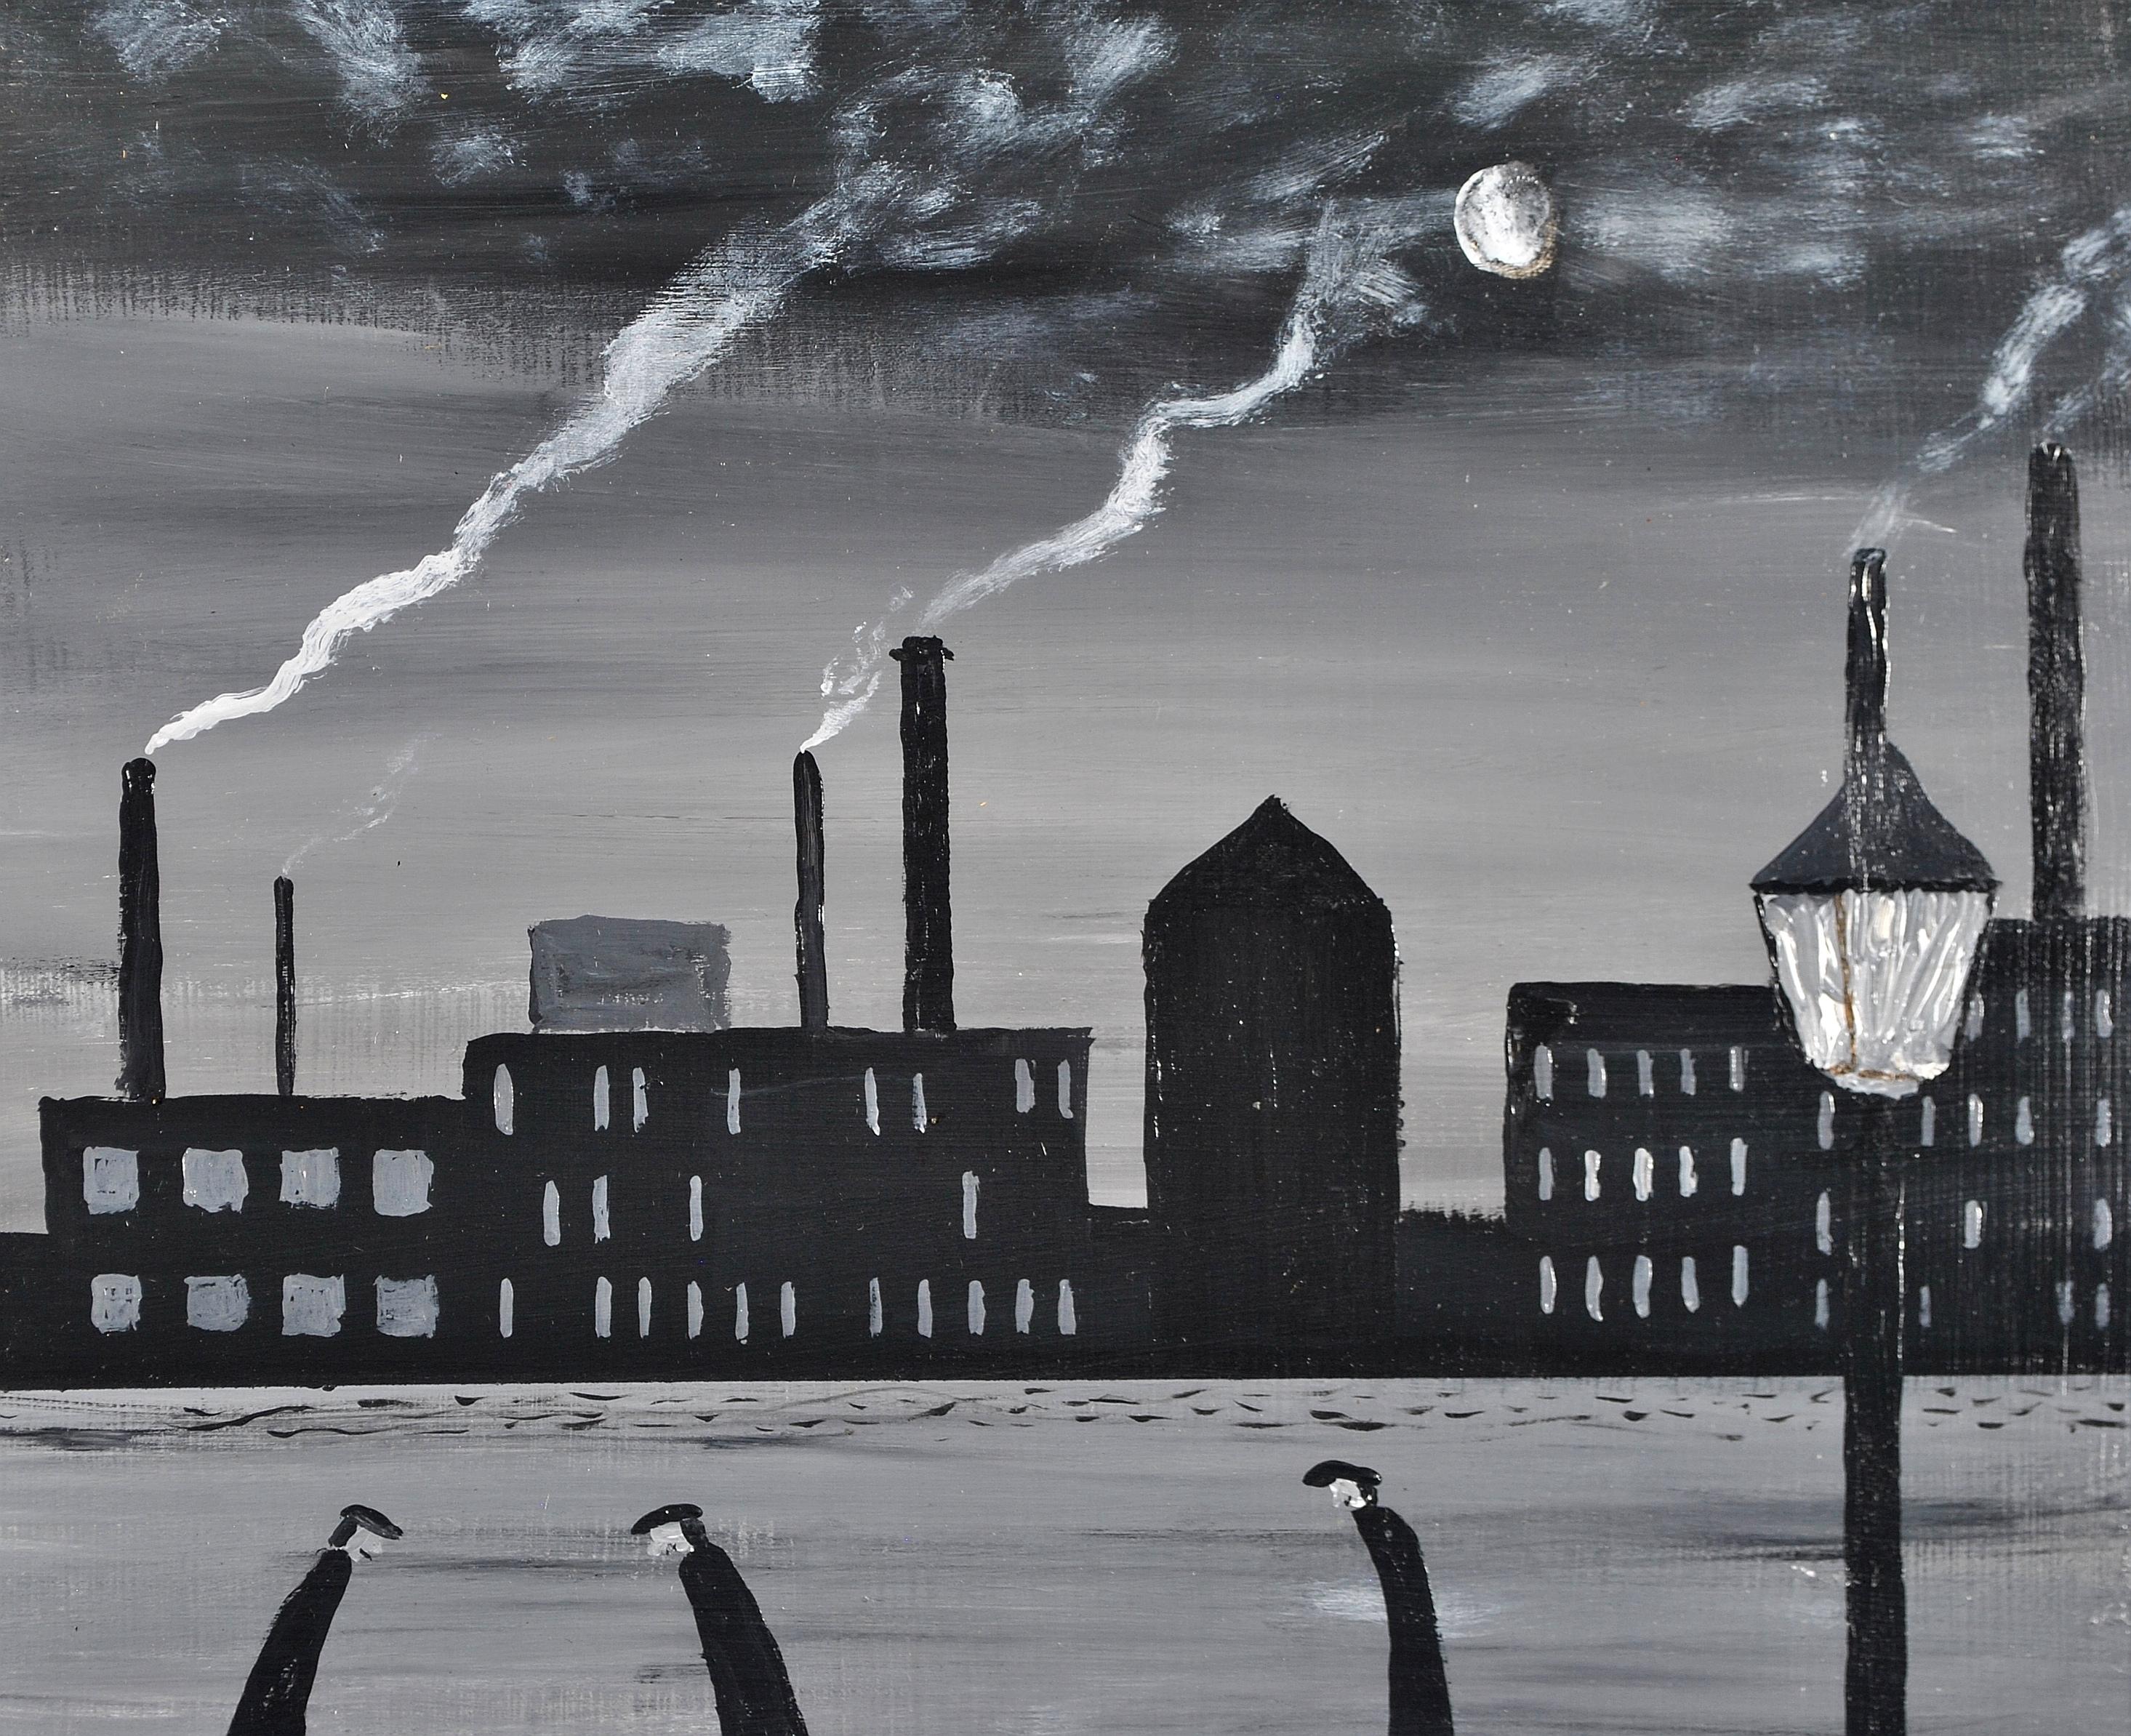 Une belle huile sur panneau du 20e siècle représentant des personnages dans un paysage industriel du Nord par Vincent Dott. Un travail d'excellente qualité à la manière de L.S. Lowry. Signée en bas à droite et présentée dans un cadre en